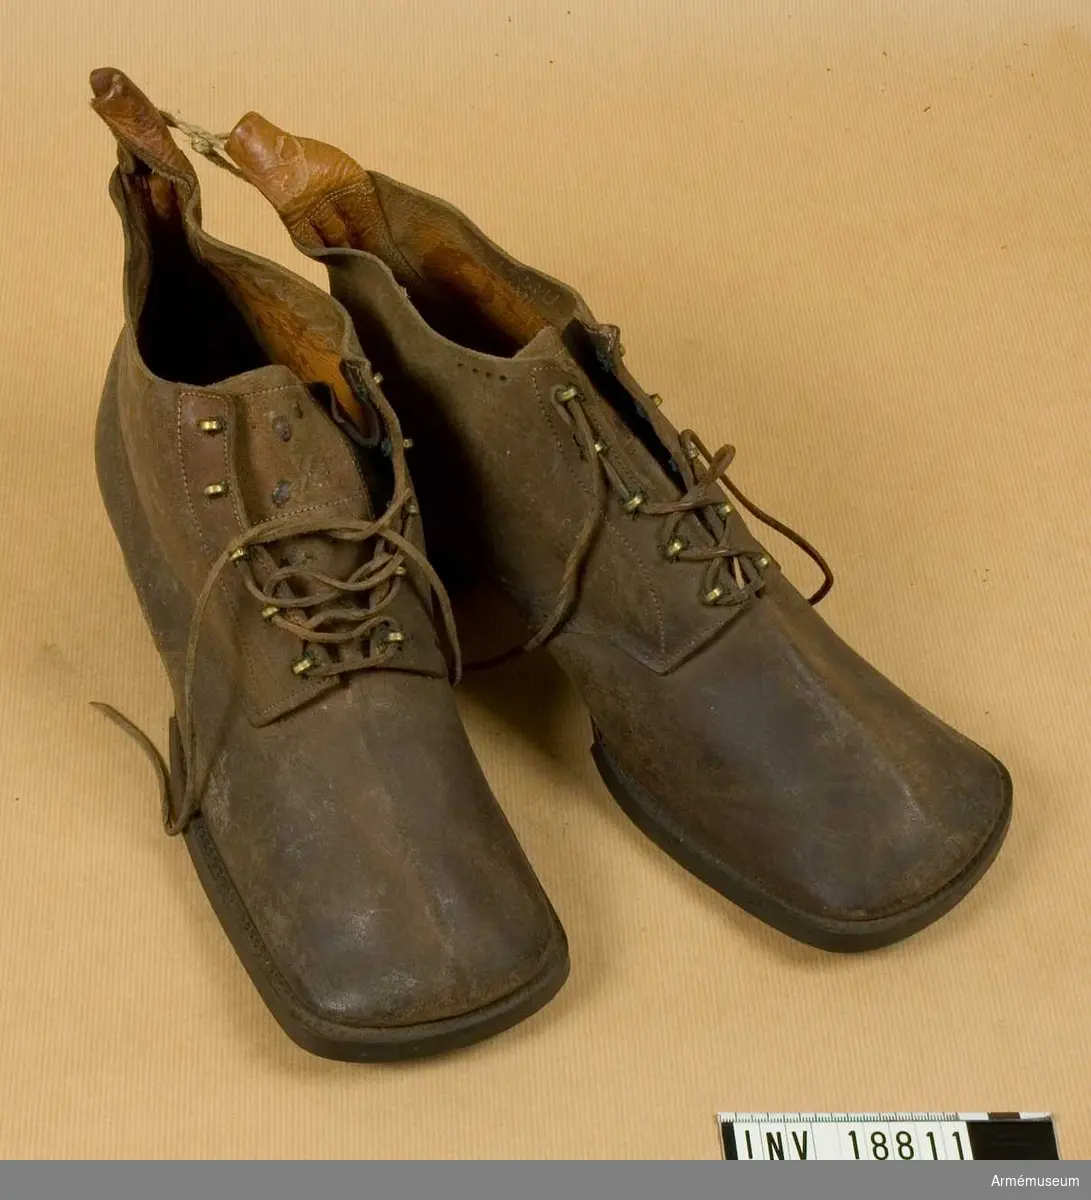 Av grovt, brunt läder med inskärning på framsidan och med 5 par hakar för att snöra skorna. Sulan betäckt med spikar och klacken med järnbeslag. På sulan finns nummer "4", på kängans innersida finns stämplar "78" - med krona ovanpå (möjligen år 1878). Andra stämplar oläsliga.